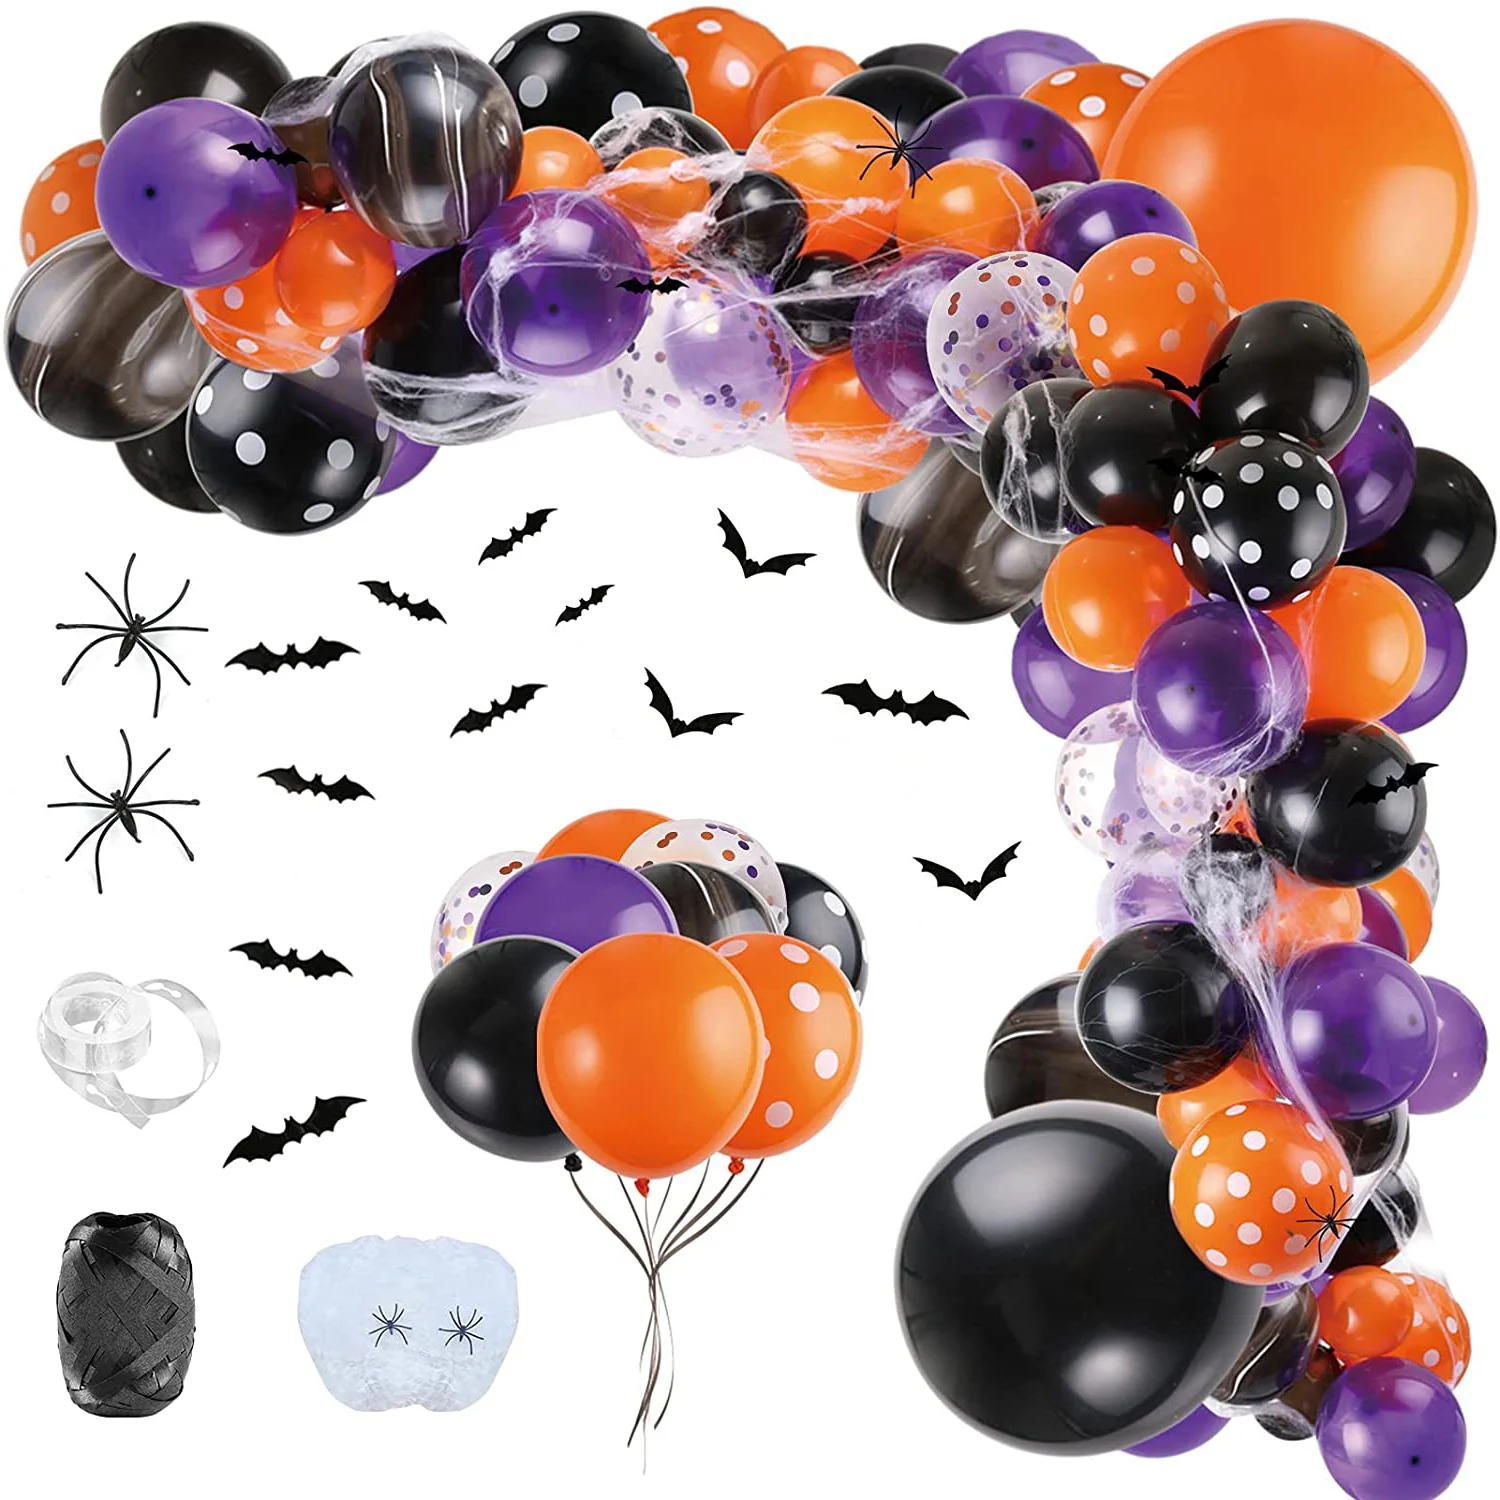 Cadılar bayramı Decorarions Balonlar Kemer 3D Yarasalar Örümcek Web Siyah Mor Turuncu Balon Garland Cadılar Bayramı Partisi Dekor için Hava Globos